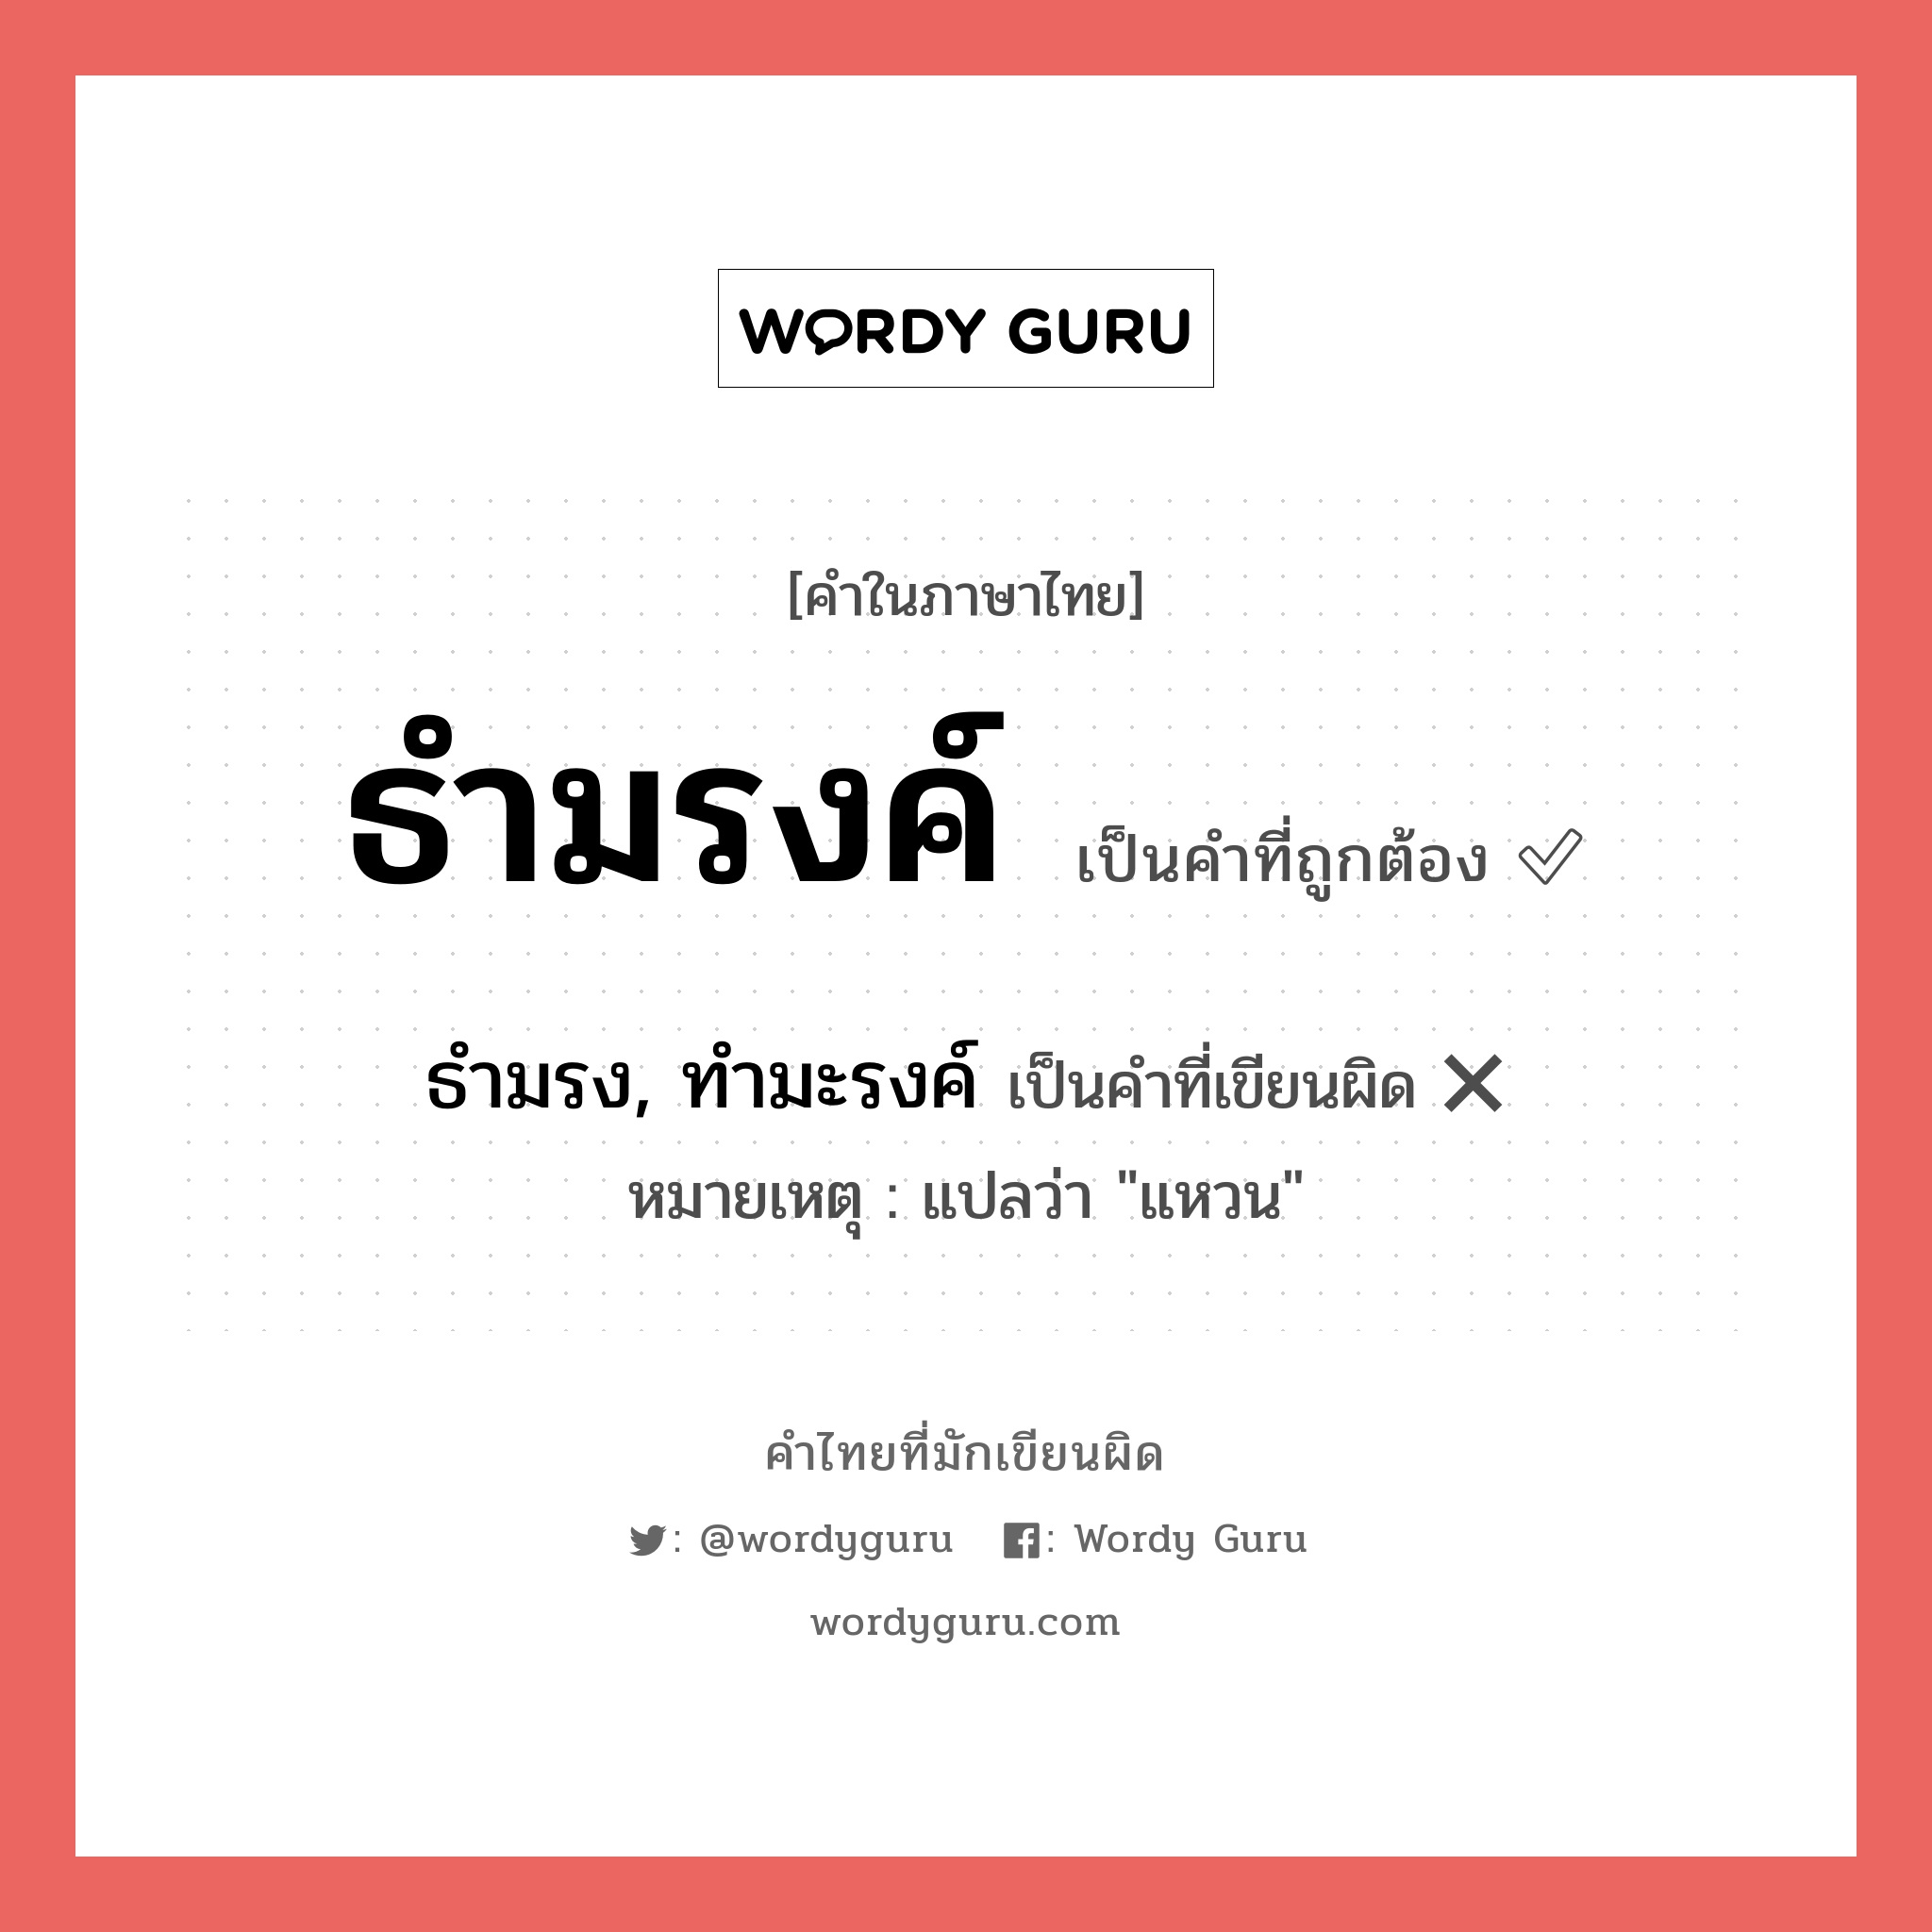 ธำมรง, ทำมะรงค์ หรือ ธำมรงค์ คำไหนเขียนถูก?, คำในภาษาไทยที่มักเขียนผิด ธำมรง, ทำมะรงค์ คำที่ผิด ❌ ธำมรงค์ หมายเหตุ แปลว่า "แหวน"